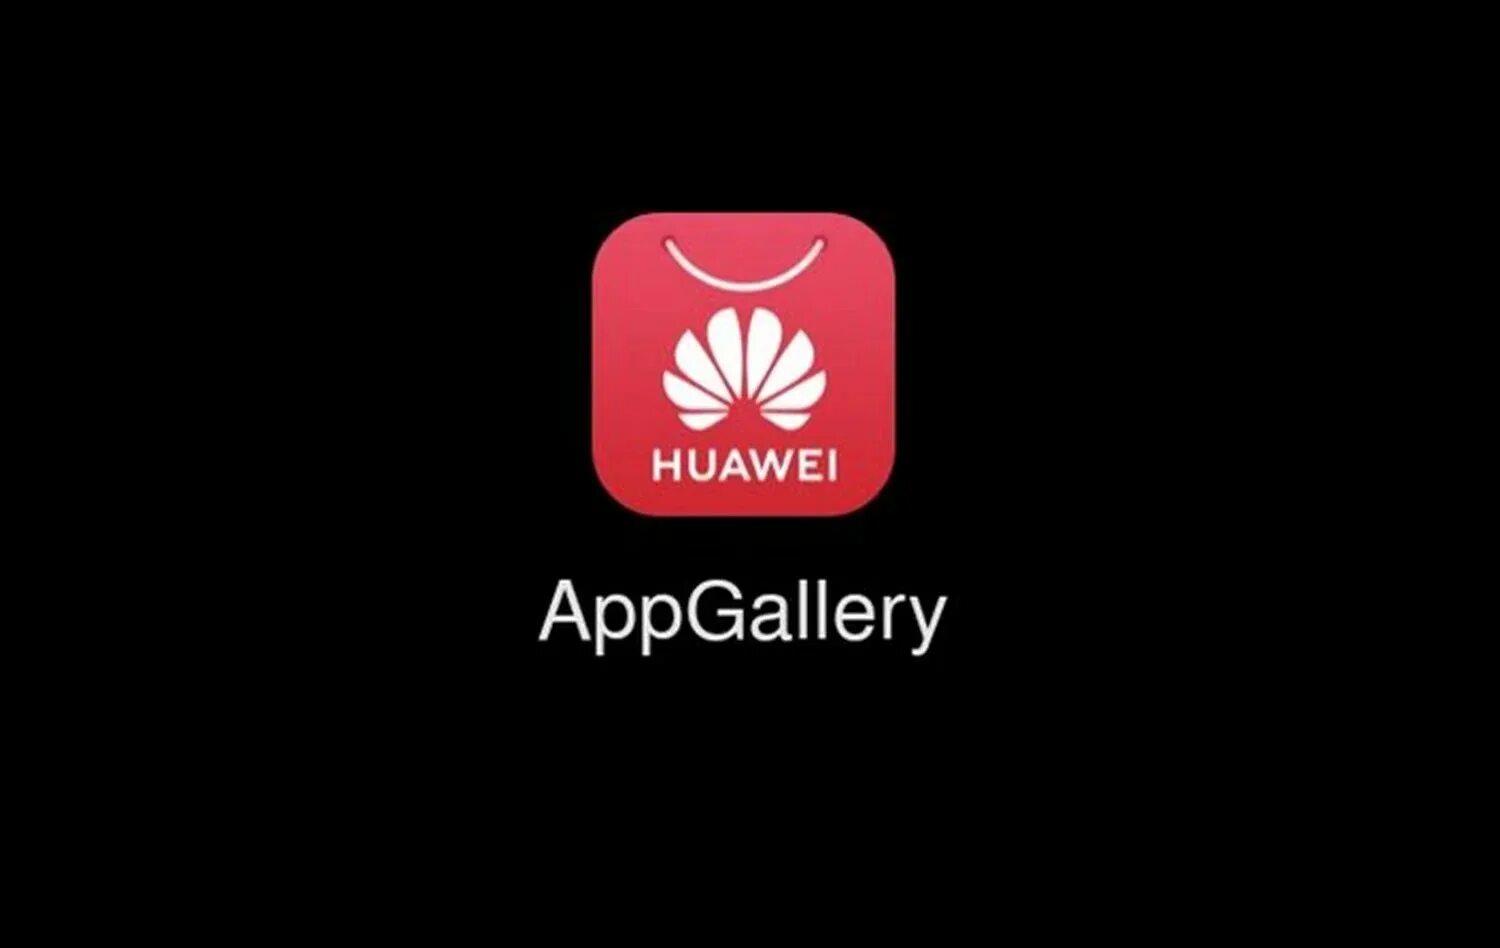 Хуавей store. Приложения Хуавей APPGALLERY. Huawei app Gallery значок. Апп галерея Хуавей. Huawei магазин приложений.